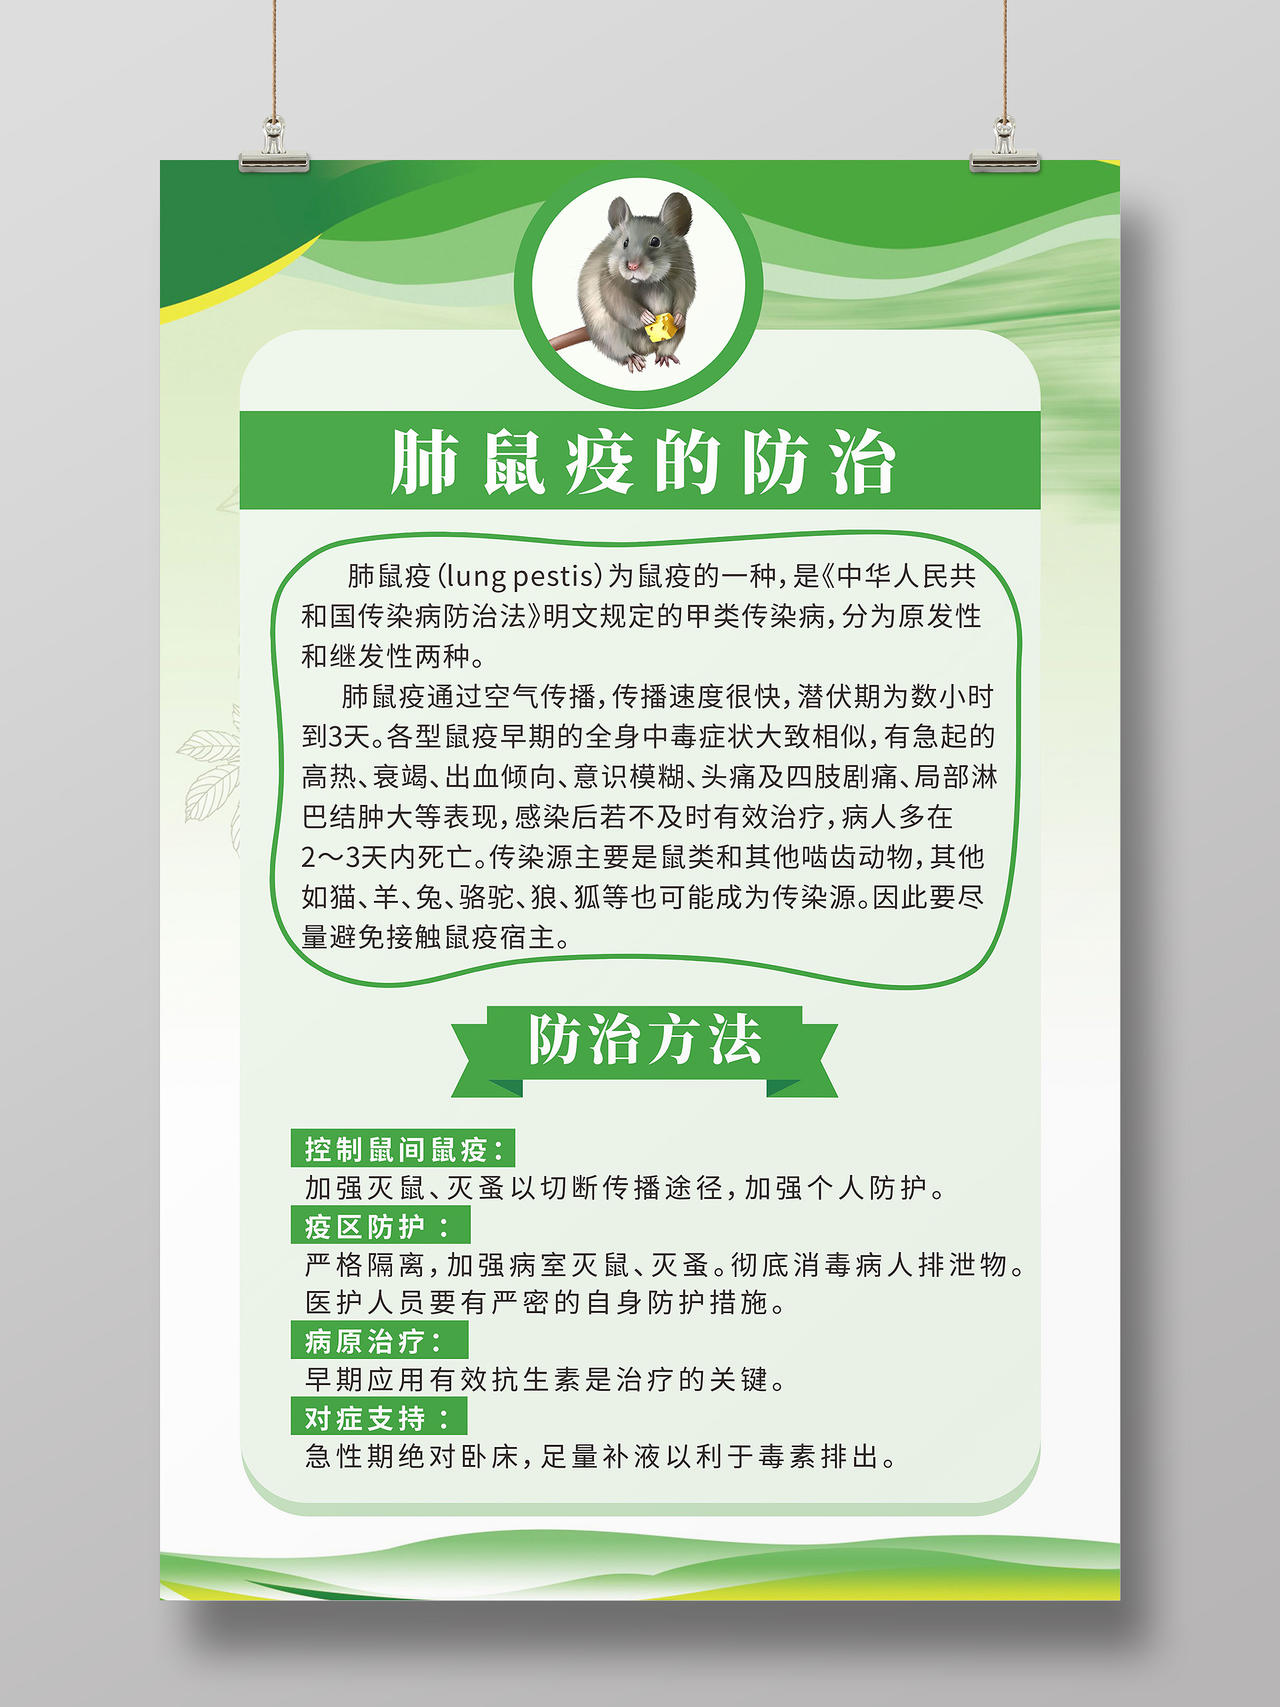 绿色简约线条背景健康教育预防鼠疫卫生海报健康教育宣传栏鼠疫